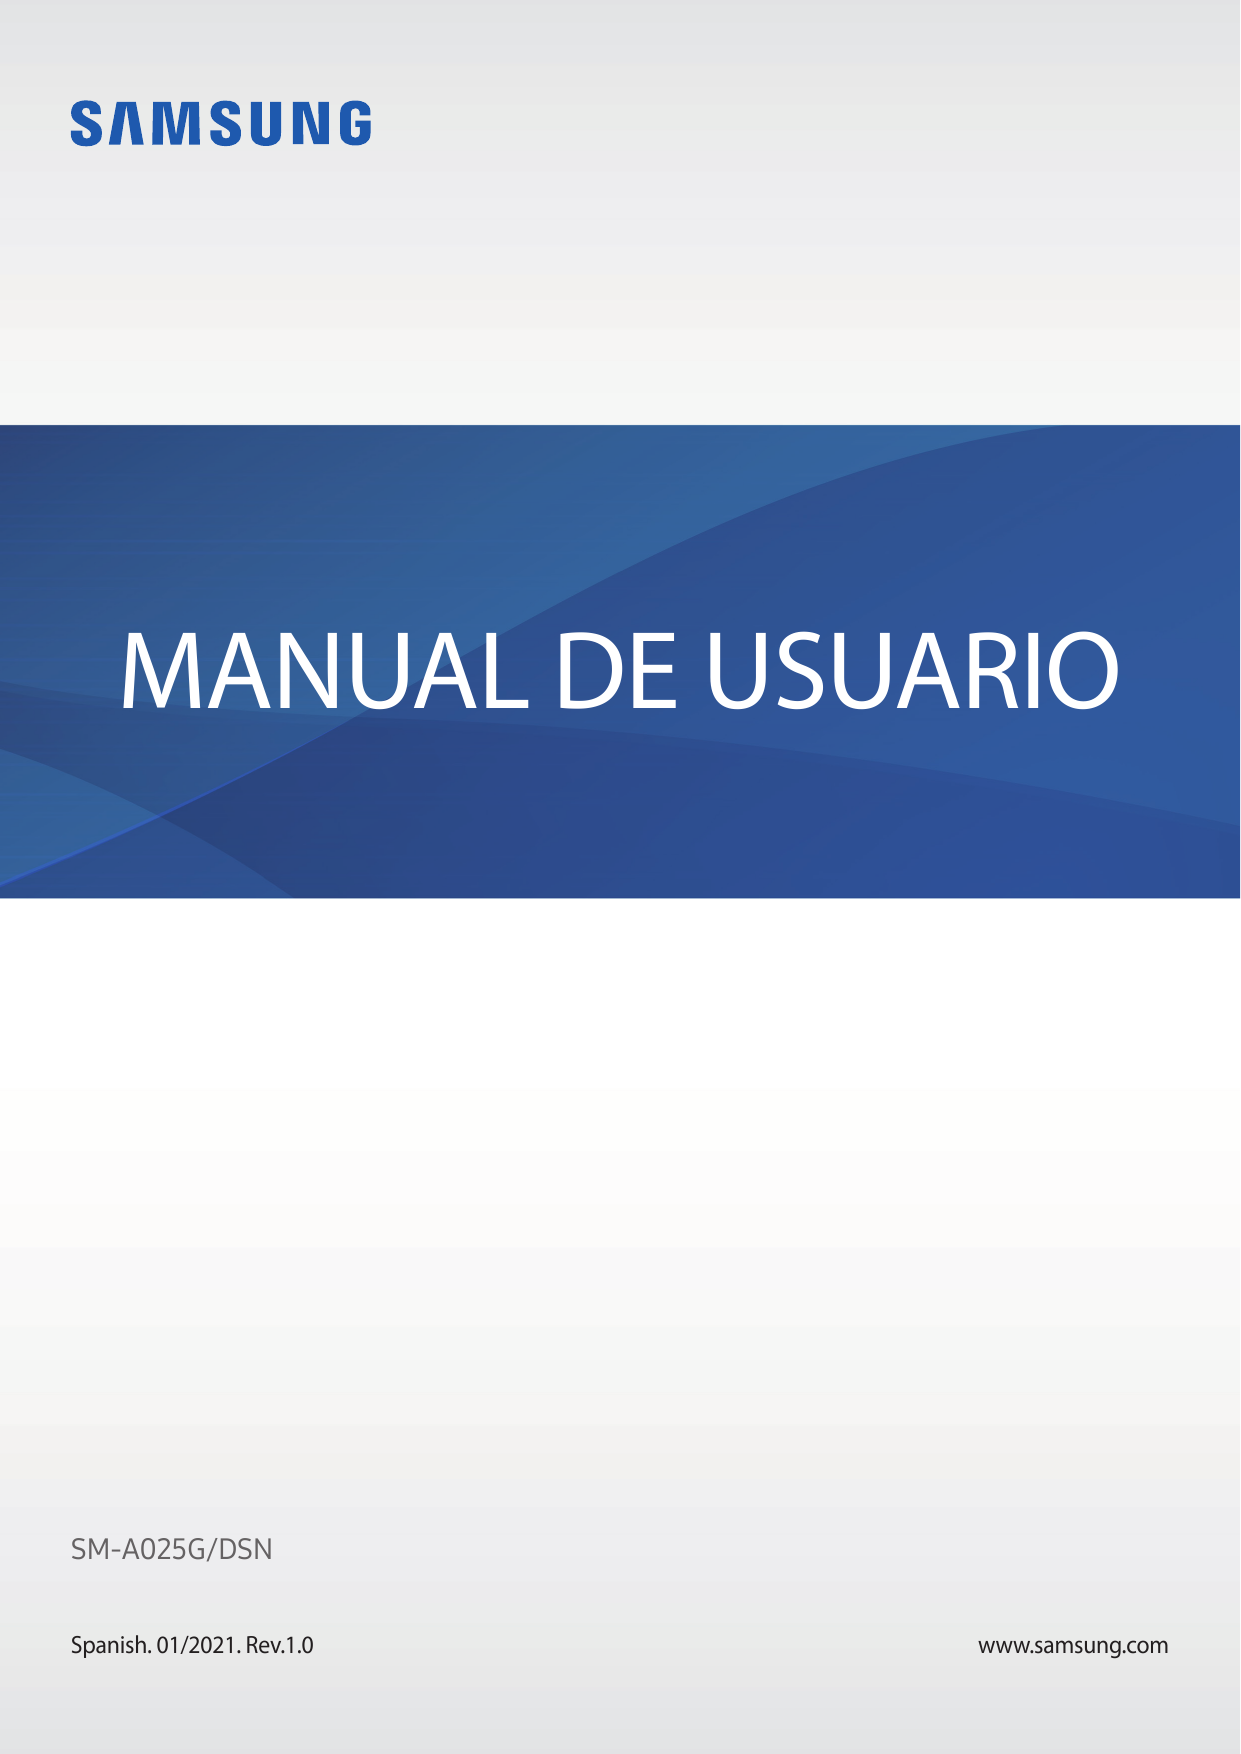 MANUAL DE USUARIOSM-A025G/DSNSpanish. 01/2021. Rev.1.0www.samsung.com